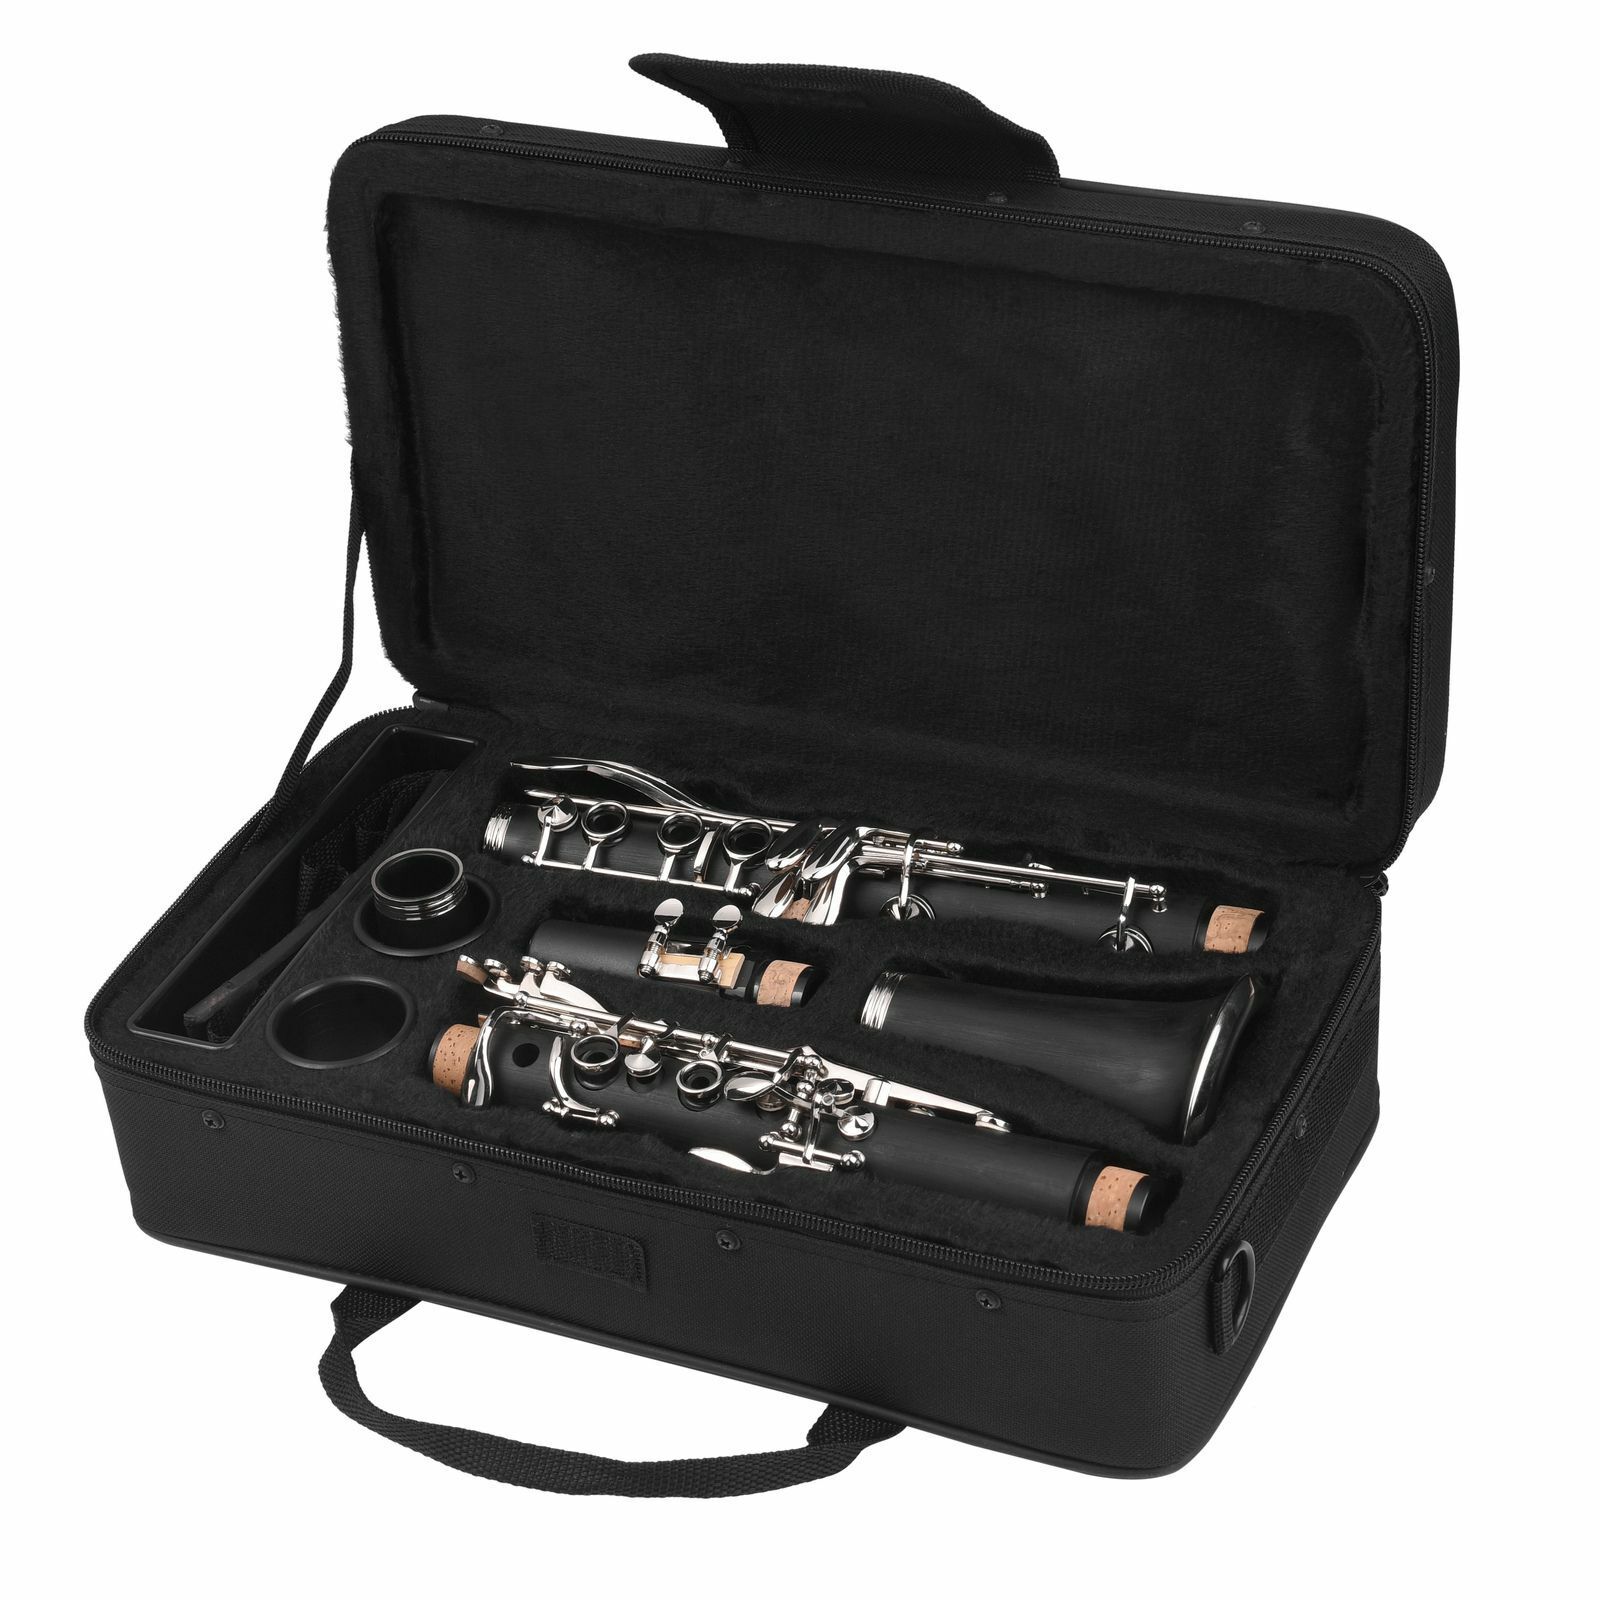 Clarinet for Sale Best Beginner Clarinet